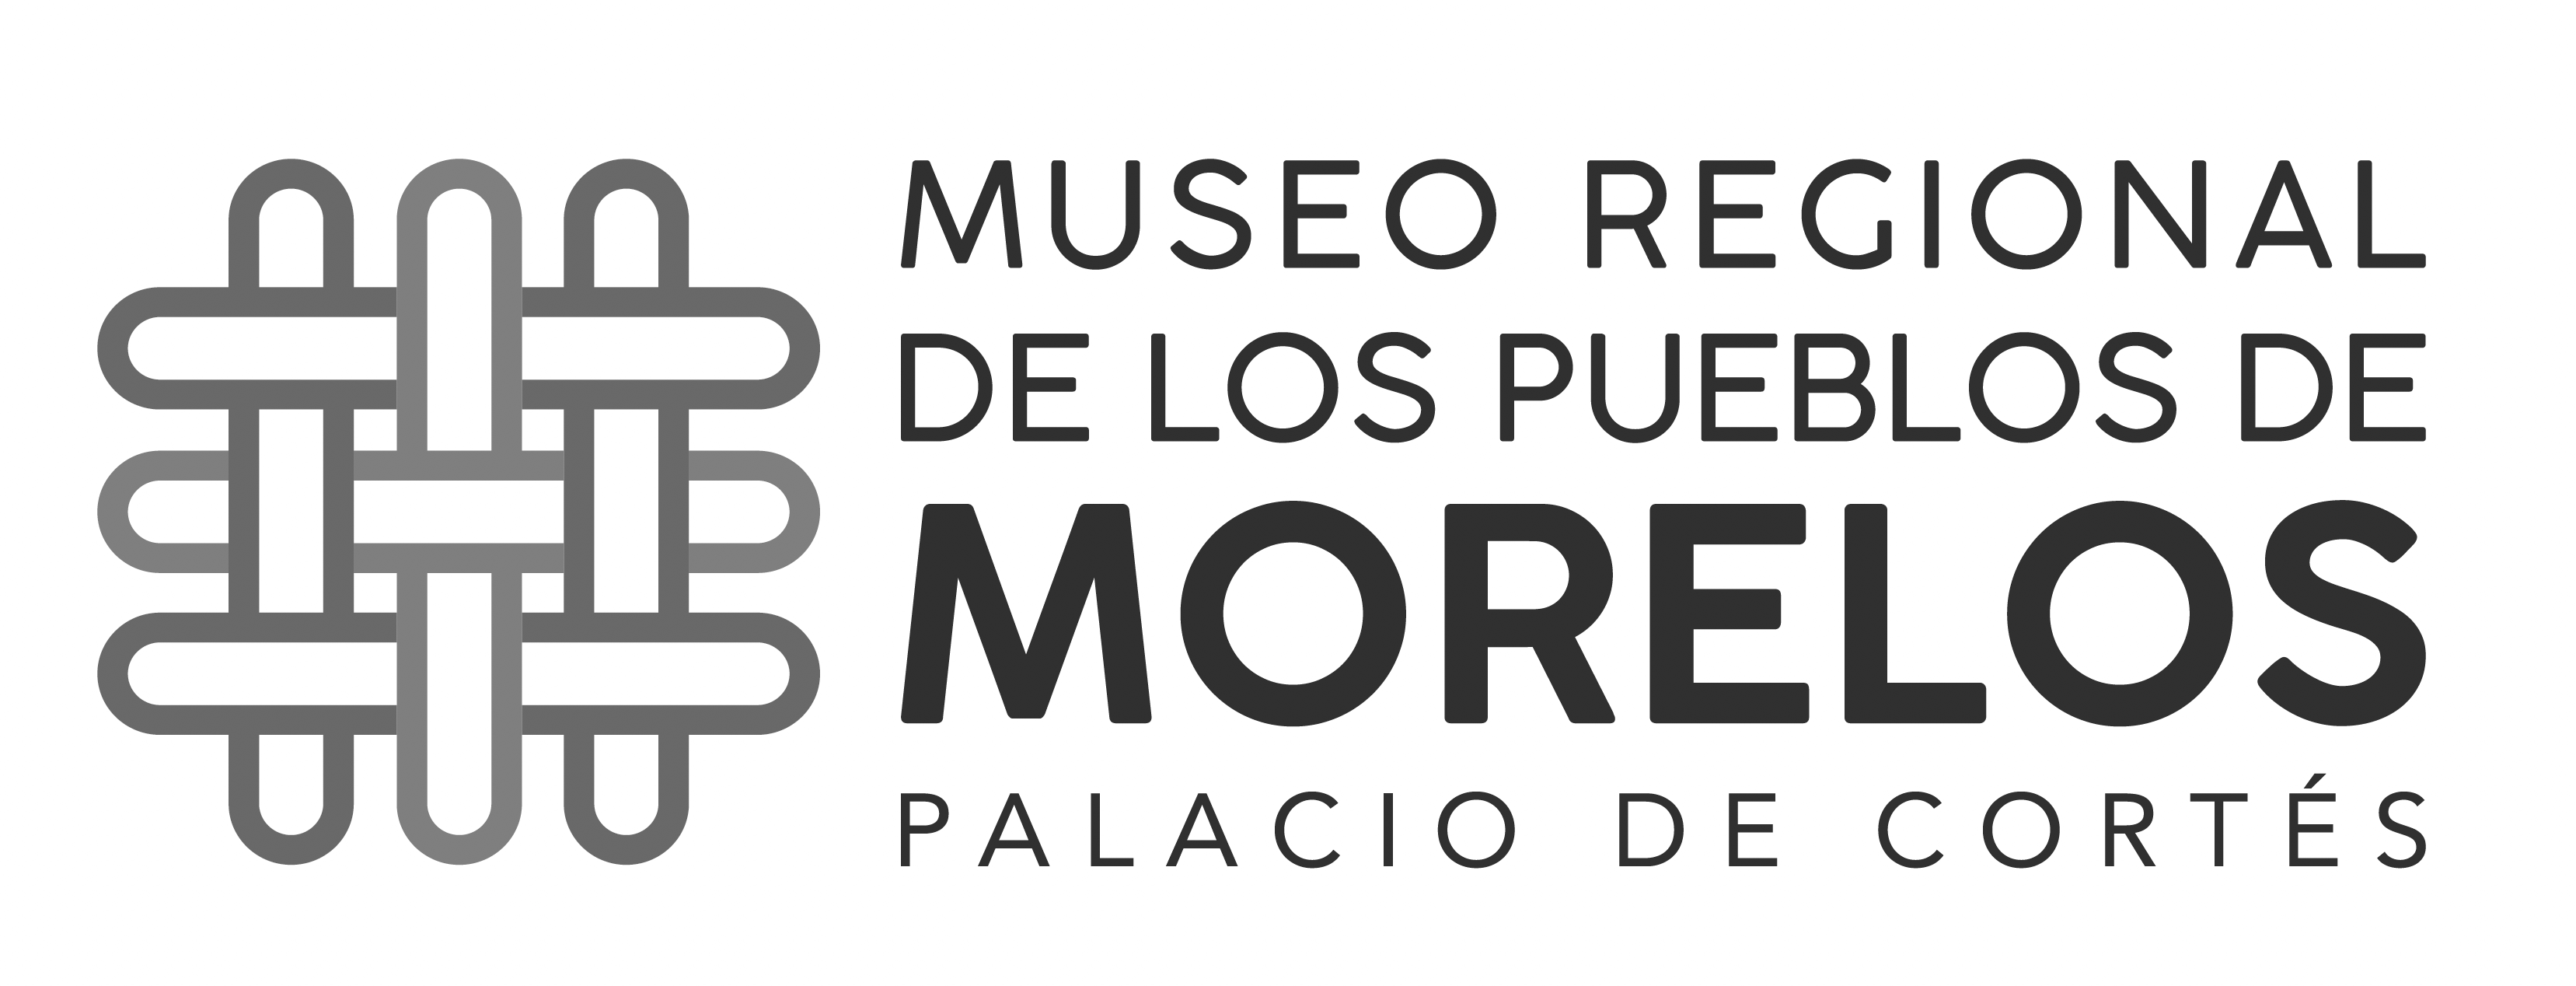 Museo Regional de los Pueblos de Morelos, Palacio de Cortés